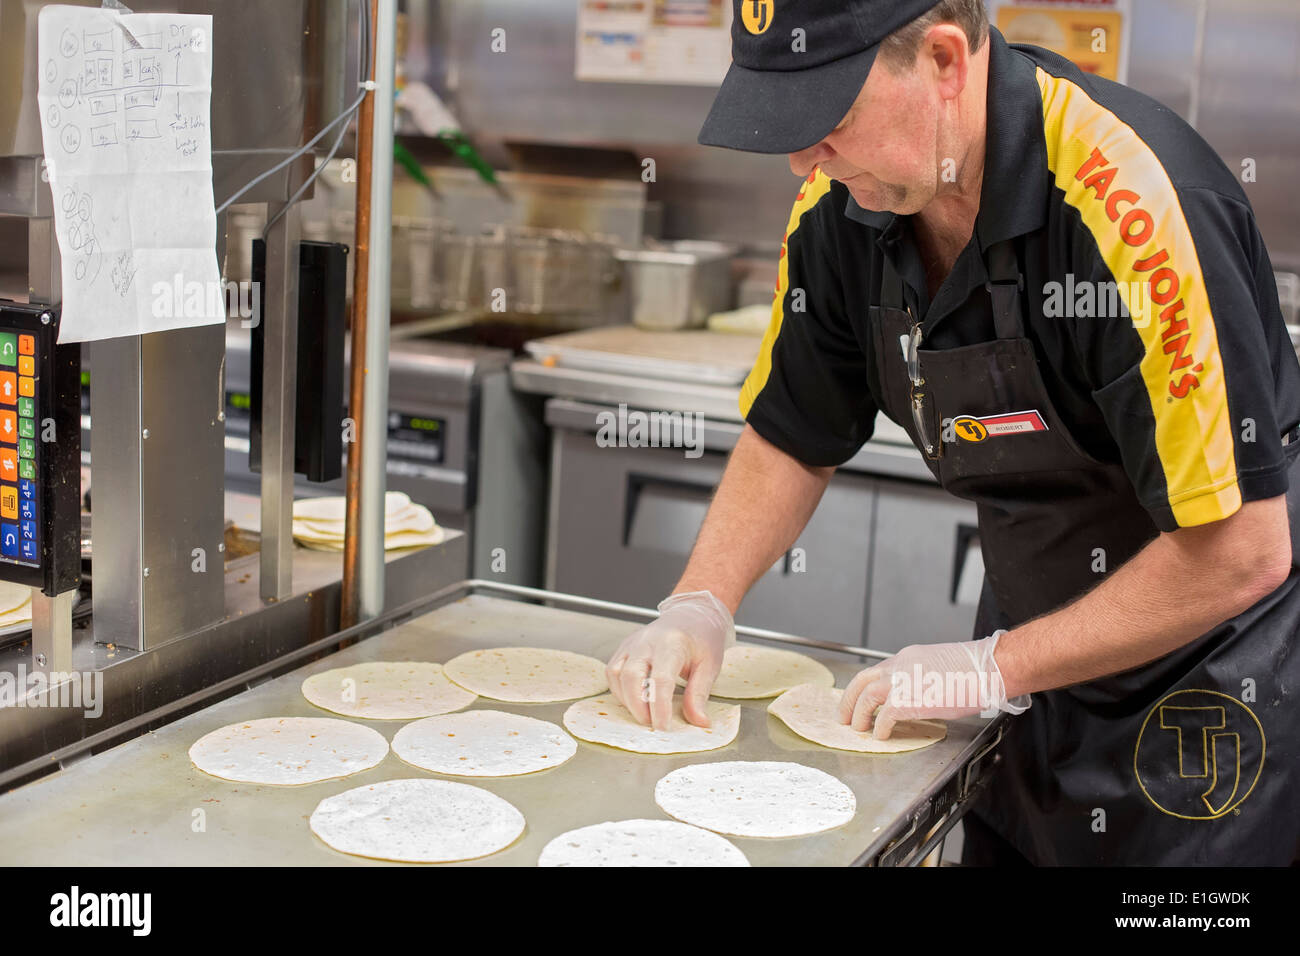 Watford Stadt, North Dakota - Taco John's Fast-Foodrestaurant, das einen $16-$20 ab Lohn für Neueinstellungen zahlt. Stockfoto